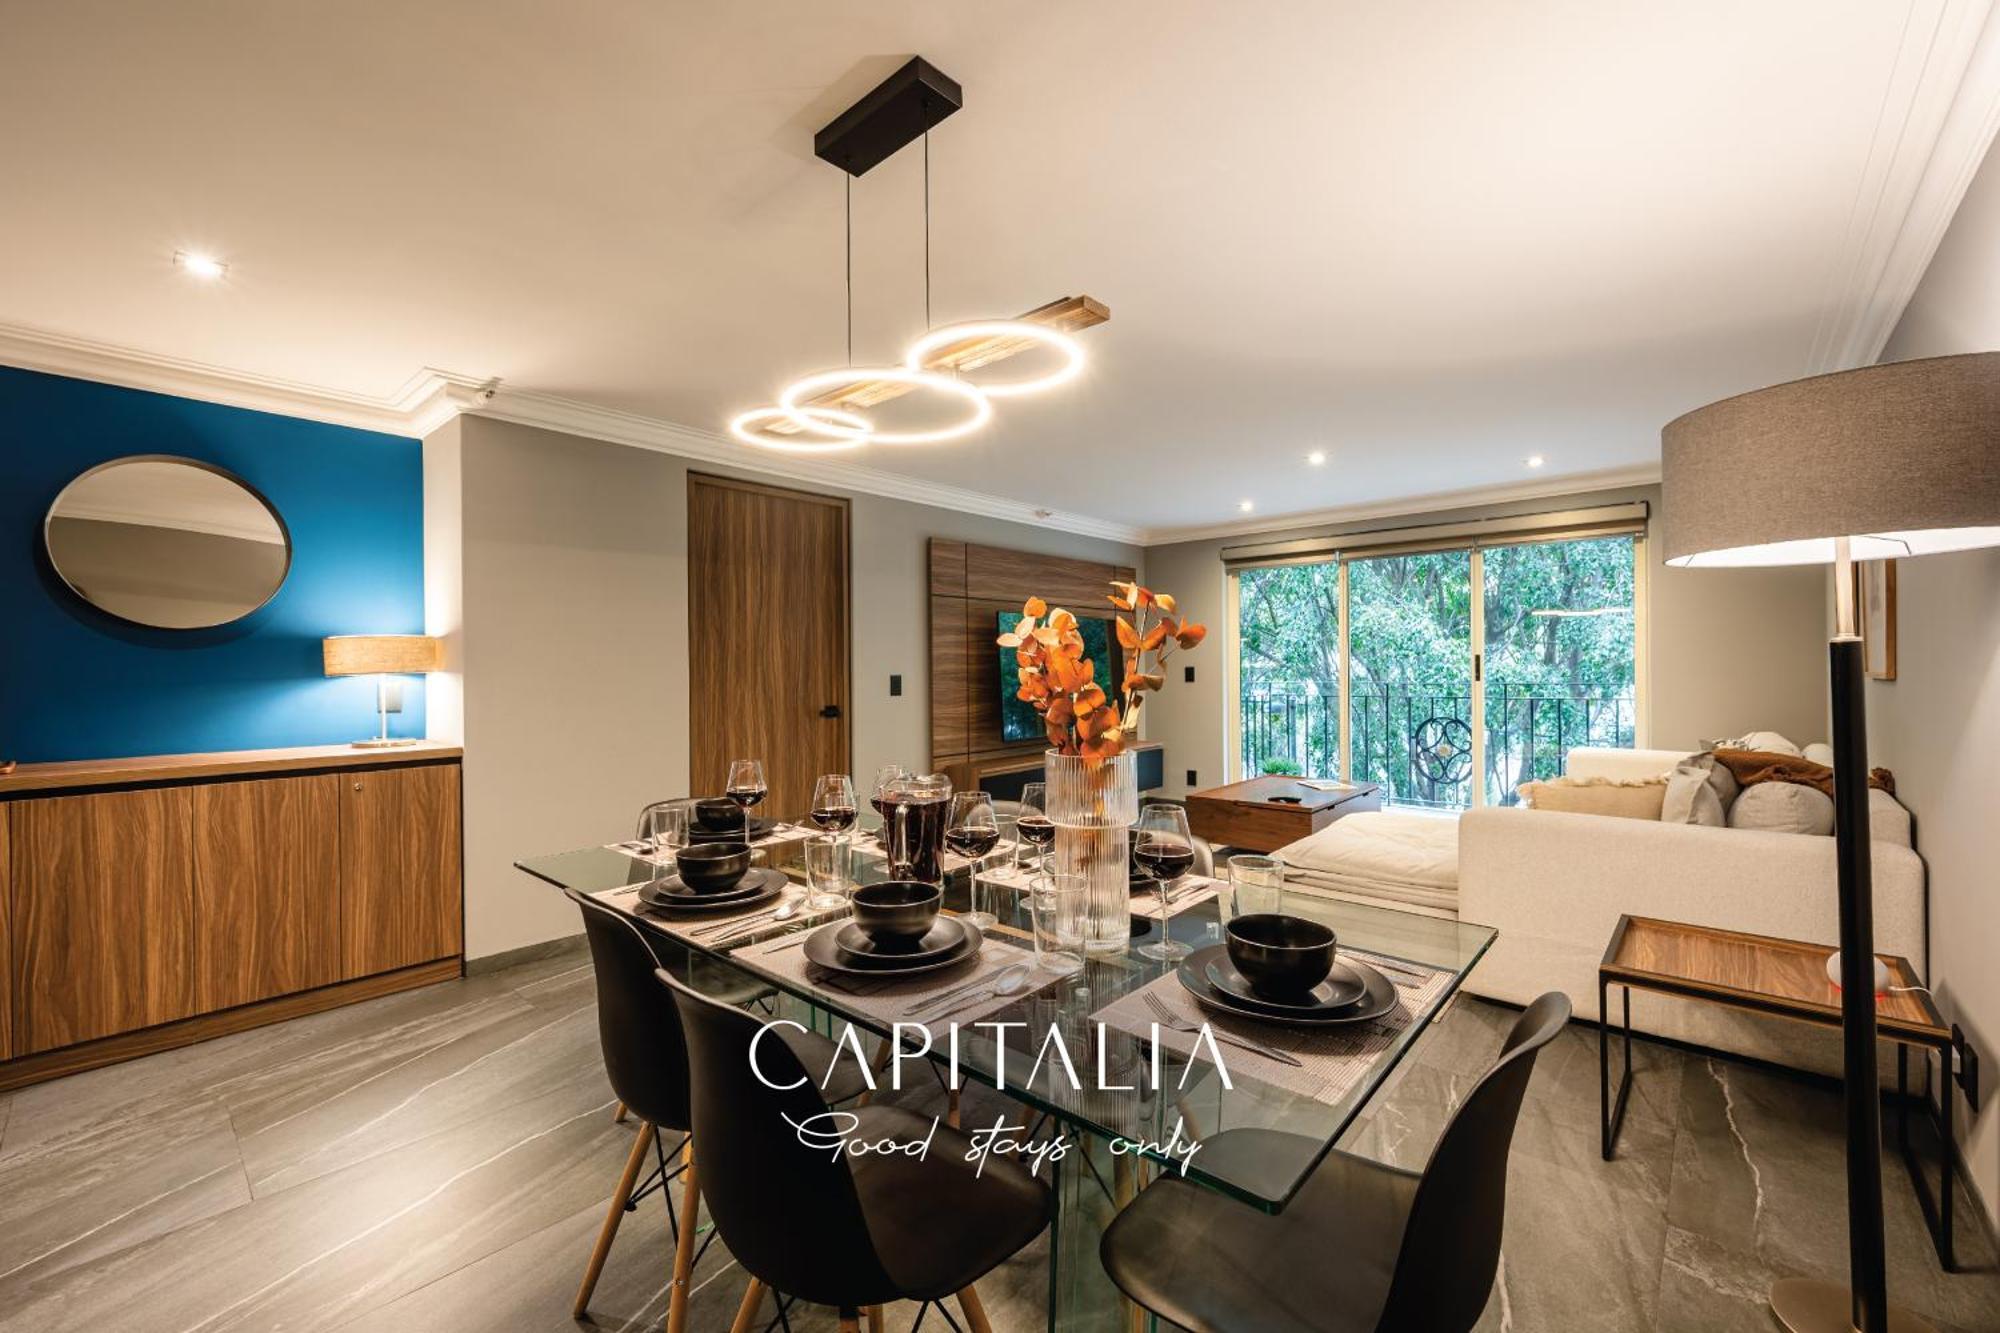 Capitalia - Apartments - Polanco - Julio Verne México DF Exterior foto